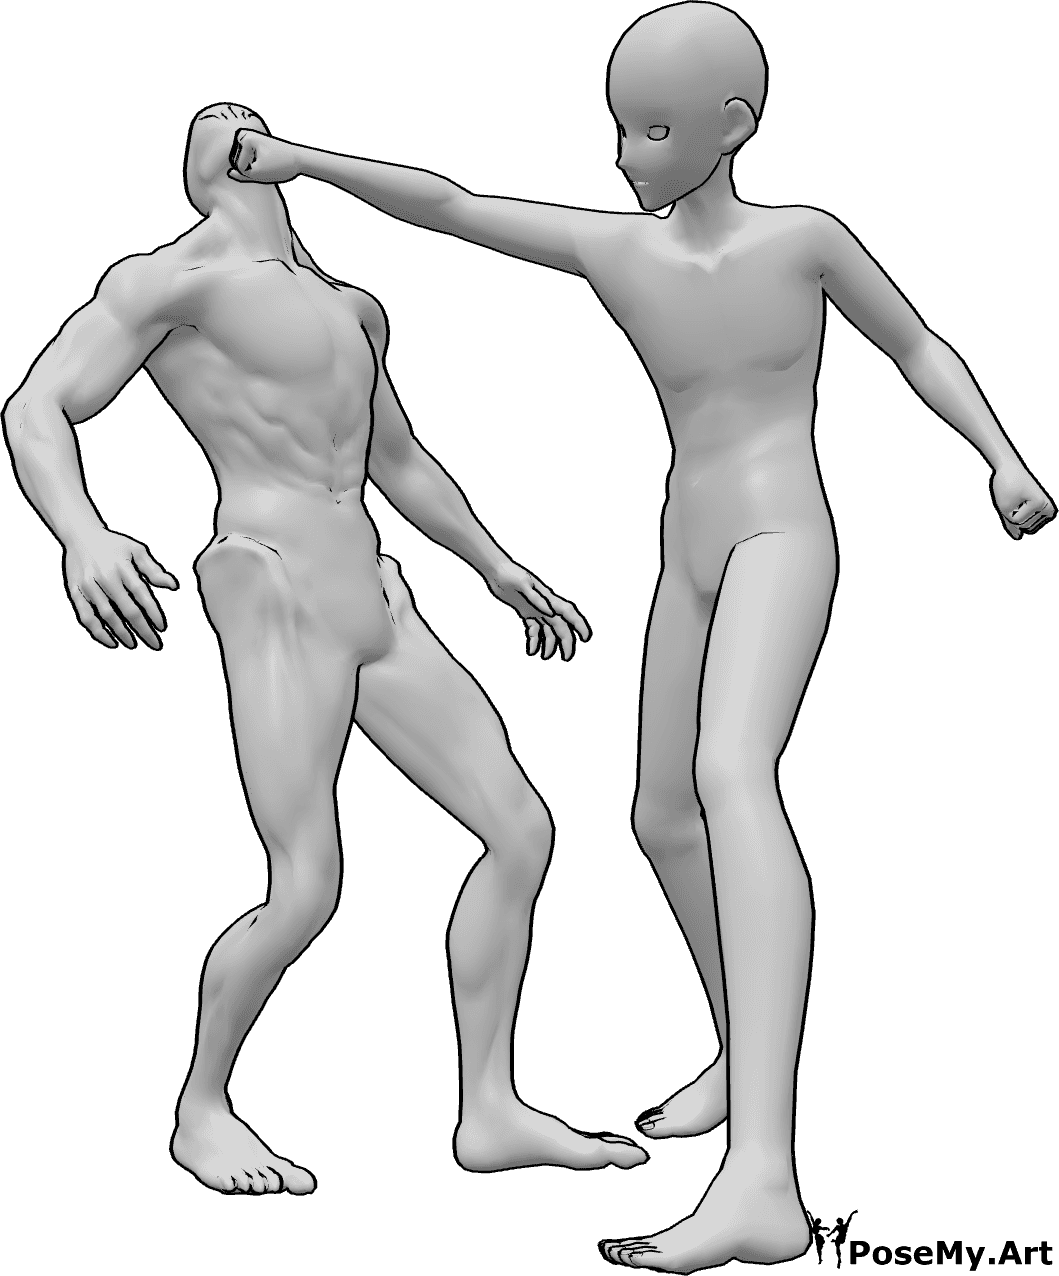 Riferimento alle pose- Anime maschio in posa da pugno - L'uomo anonimo sta colpendo il nemico alla testa con la mano destra.